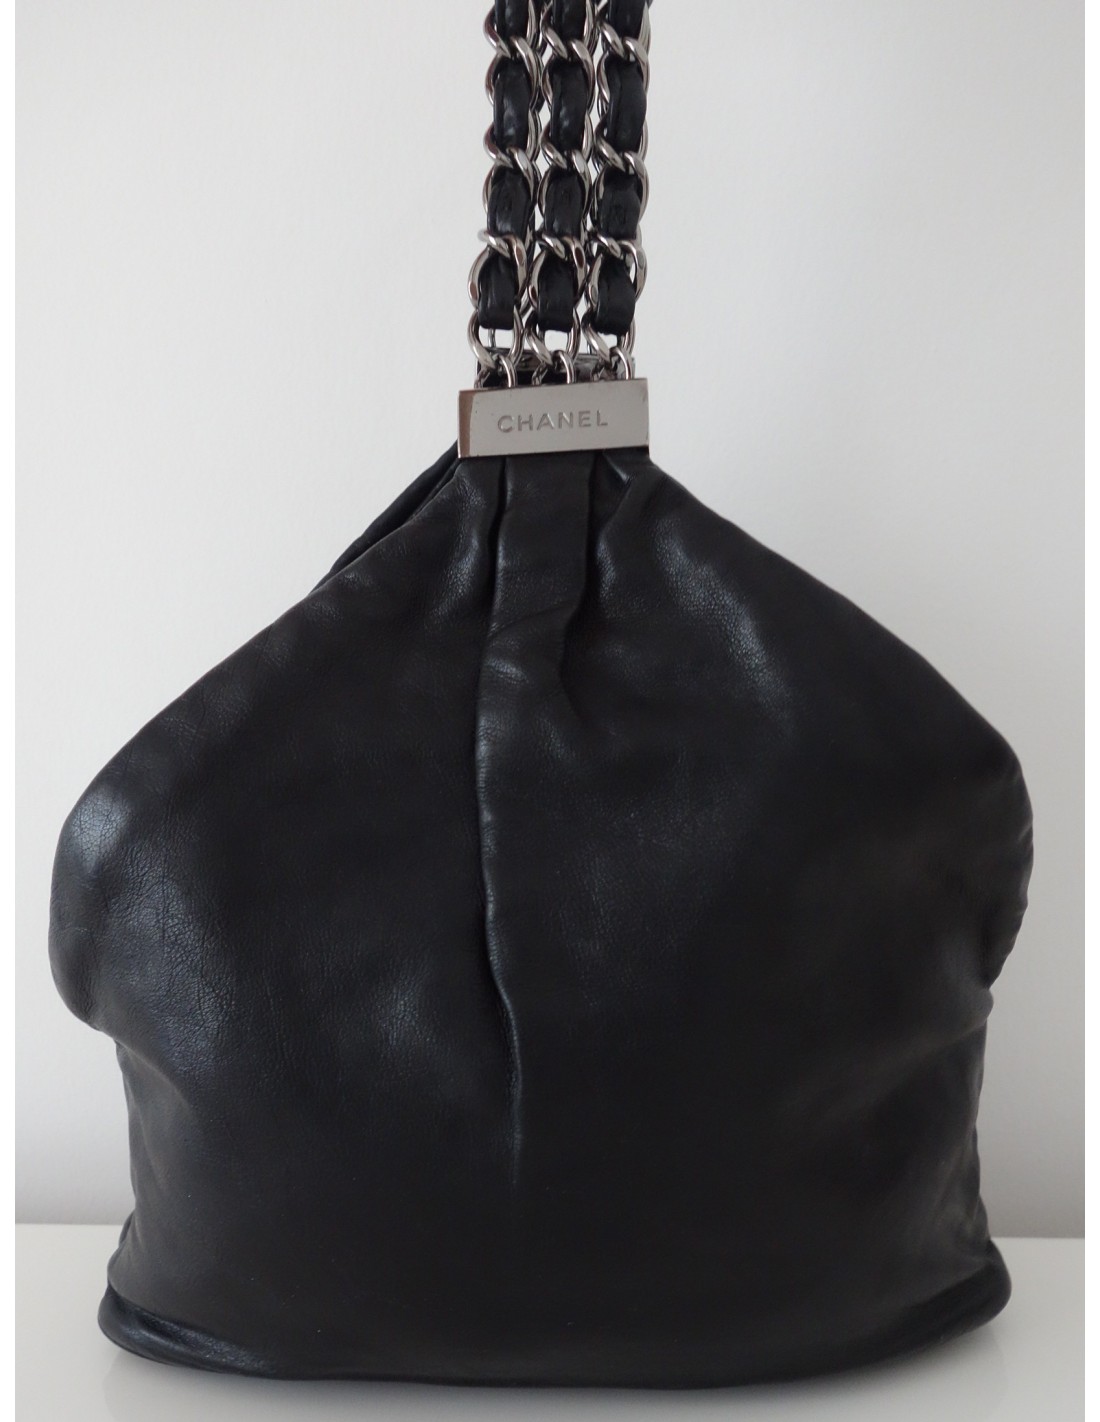 Sac pochette CHANEL couture cuir noir vendu chez CBBO Bordeaux